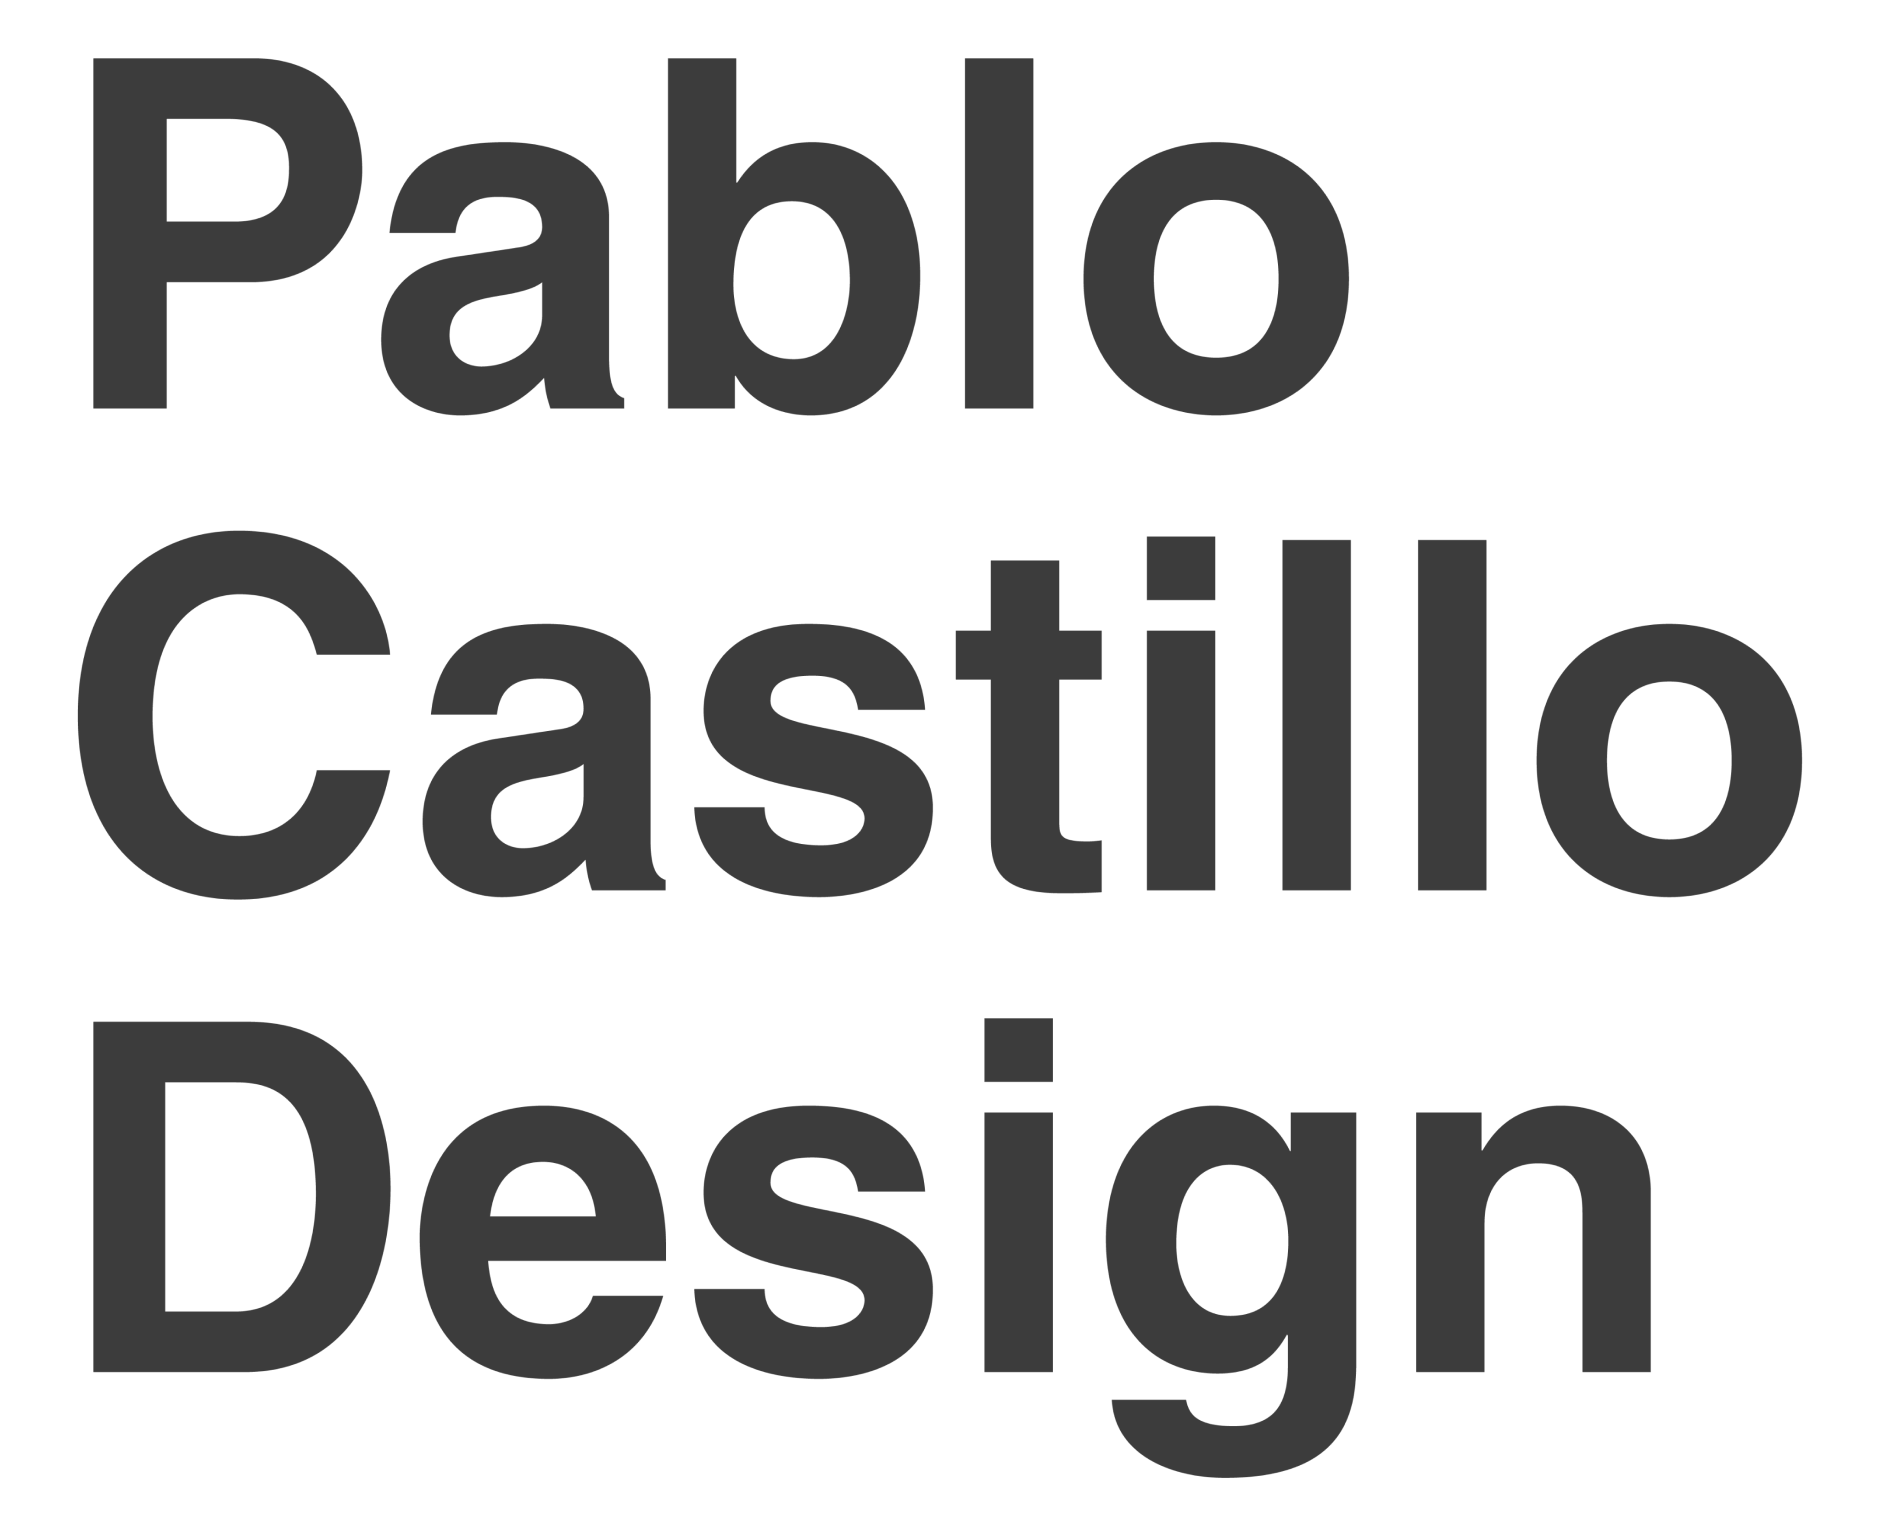 Pablo Castillo Design